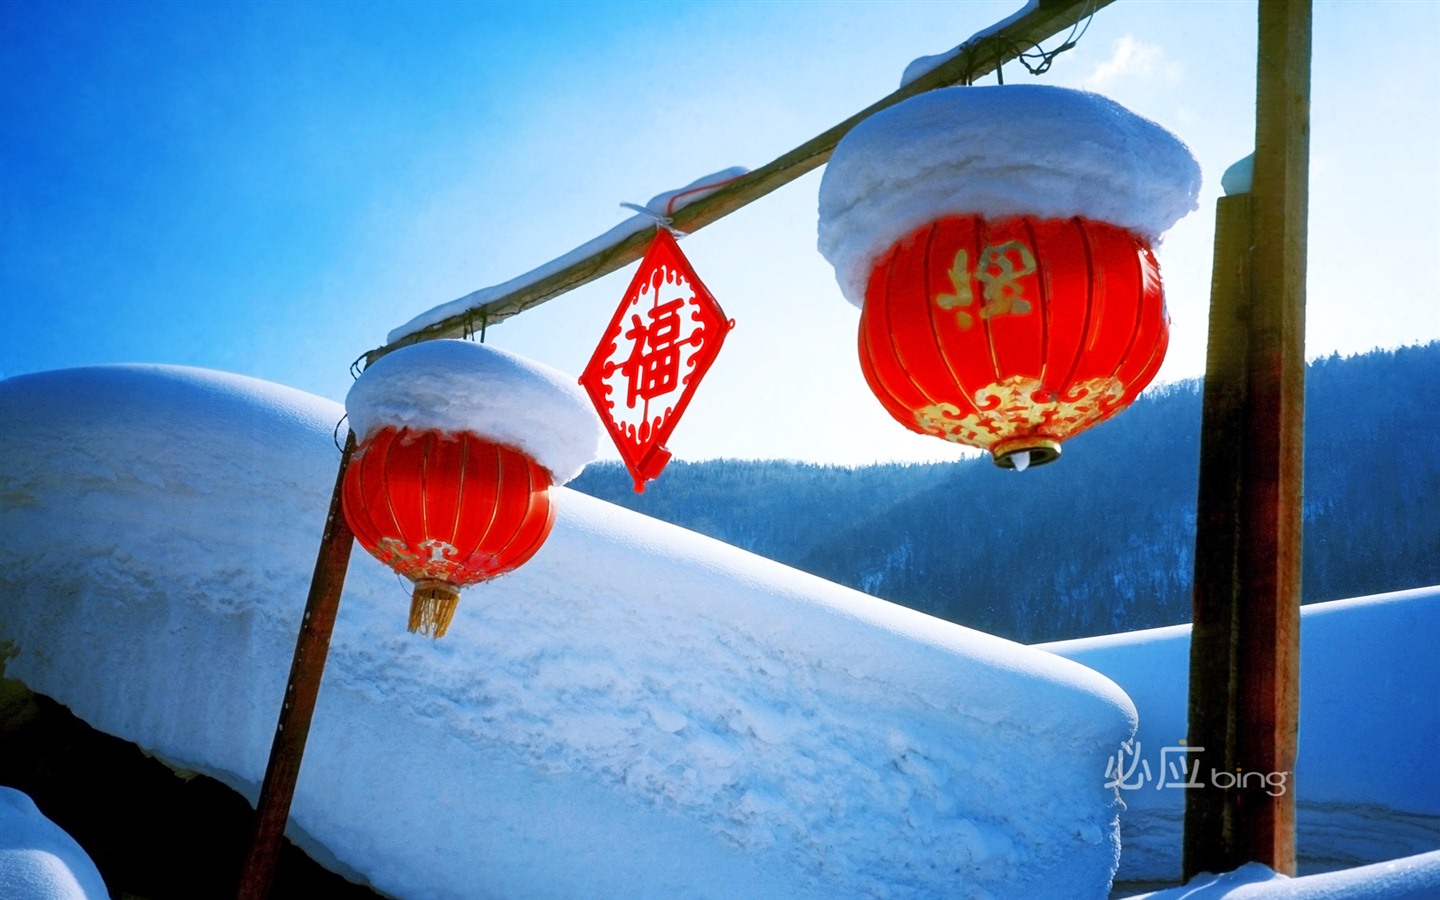 Lo mejor de Fondos de Bing: China #3 - 1440x900